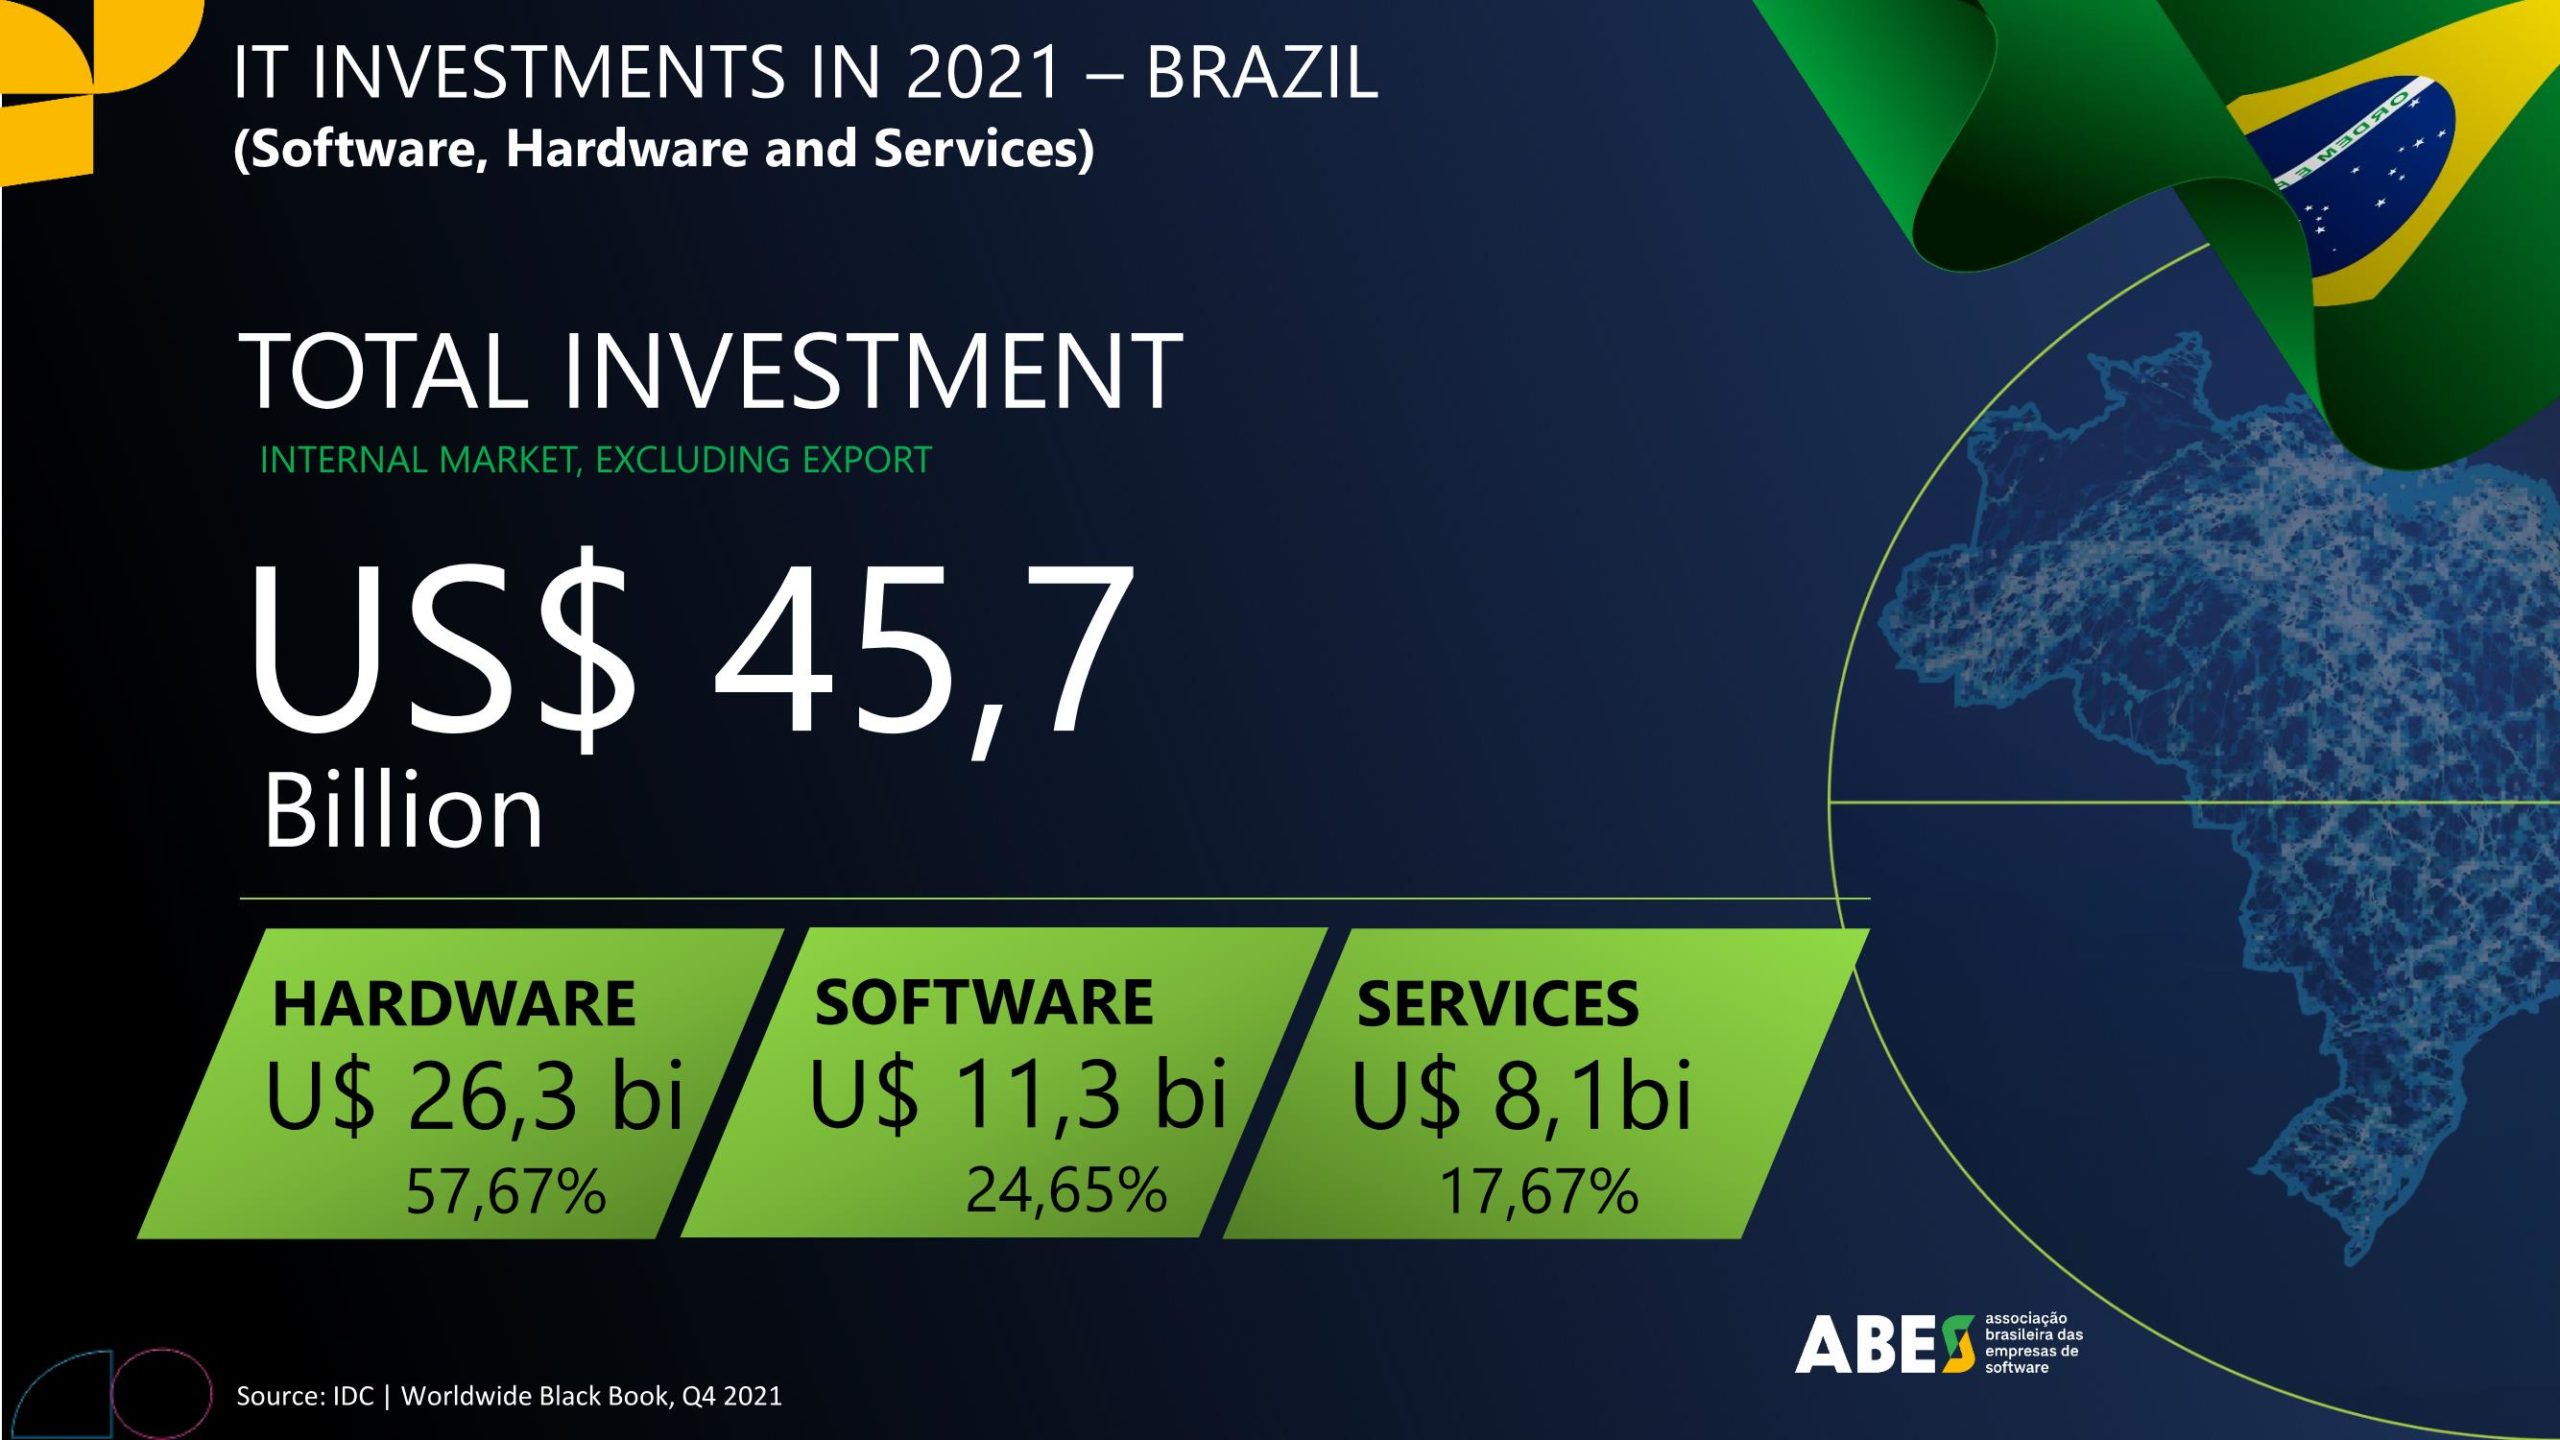 ABES divulga resultados do estudo Mercado Brasileiro de Software -  Panorama e Tendência 2021, em 4 de agosto - ABES